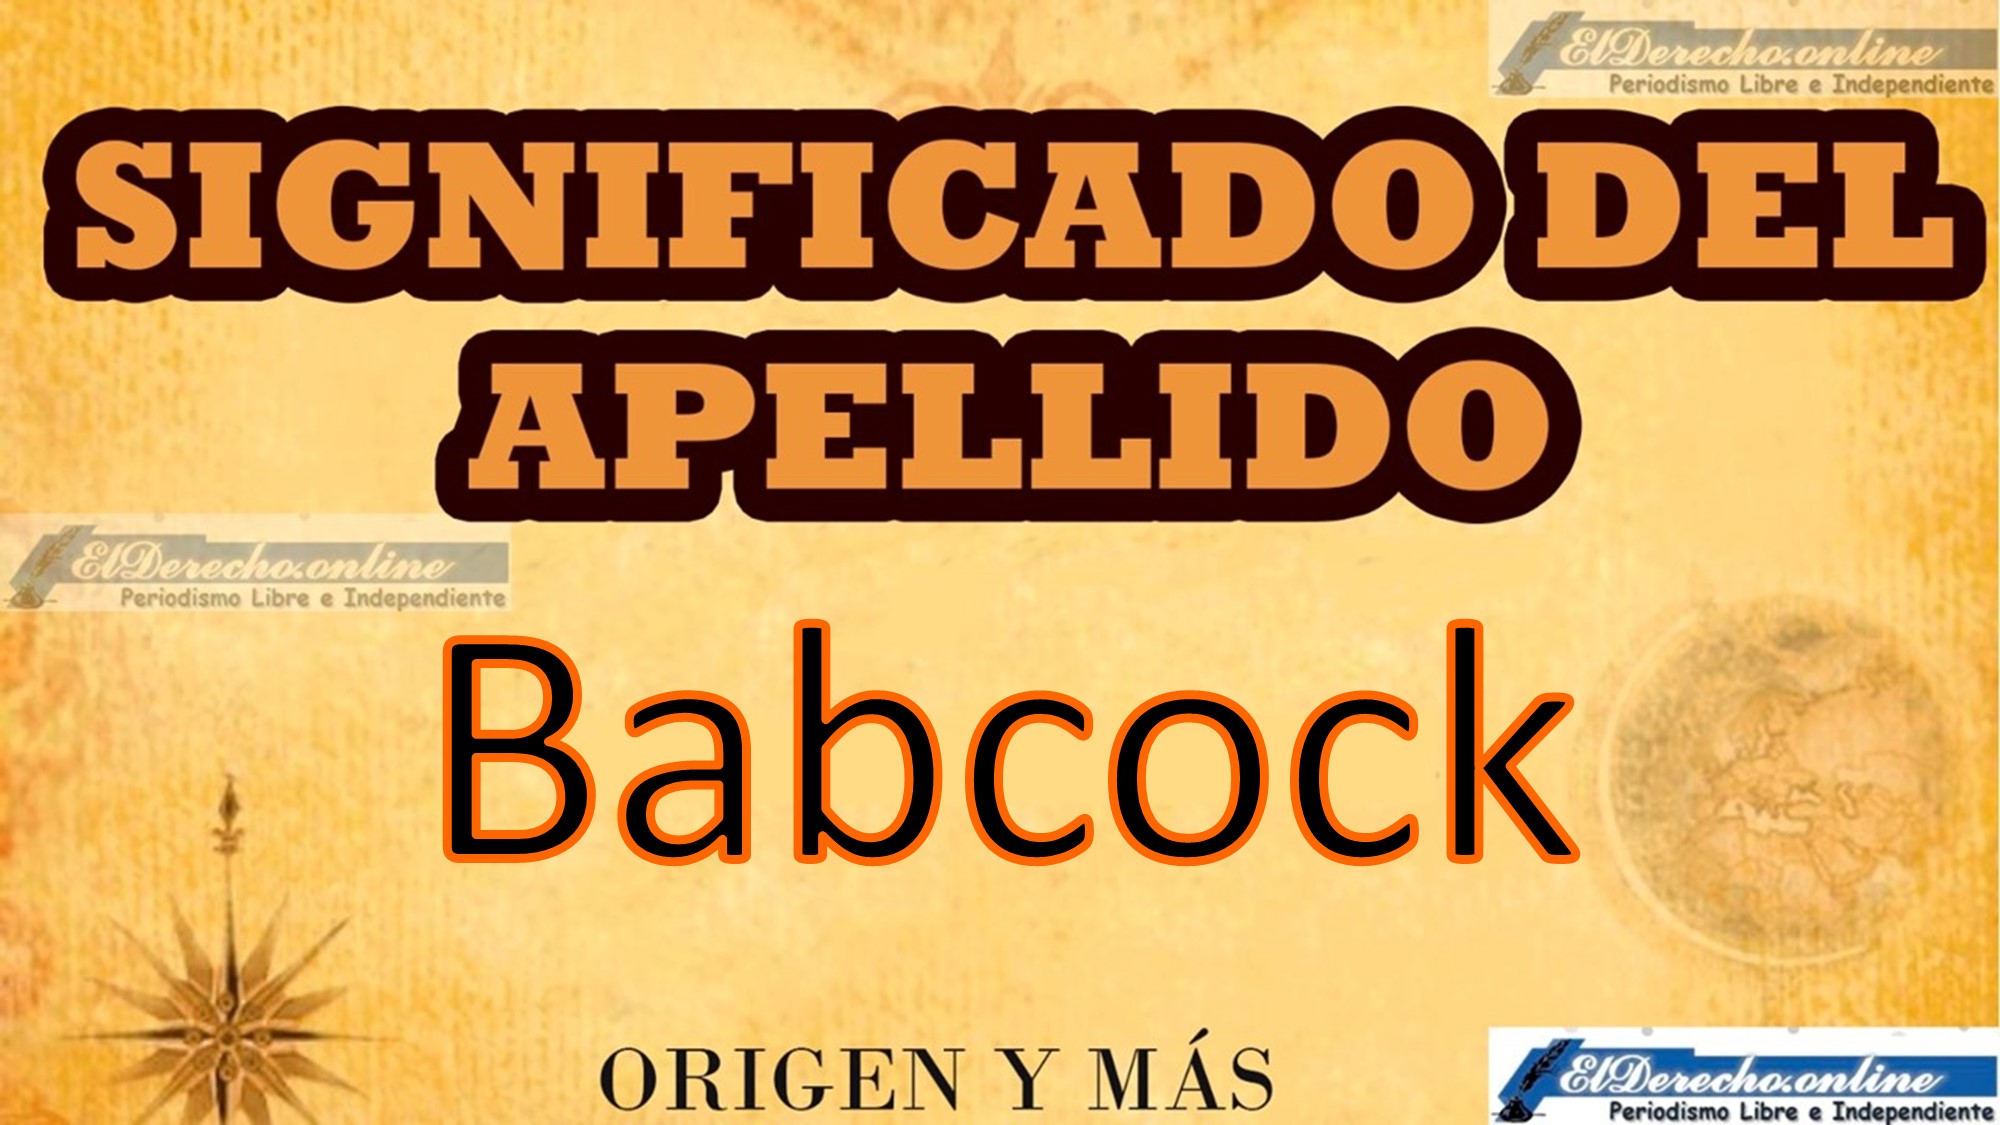 Significado del apellido Babcock, Origen y más